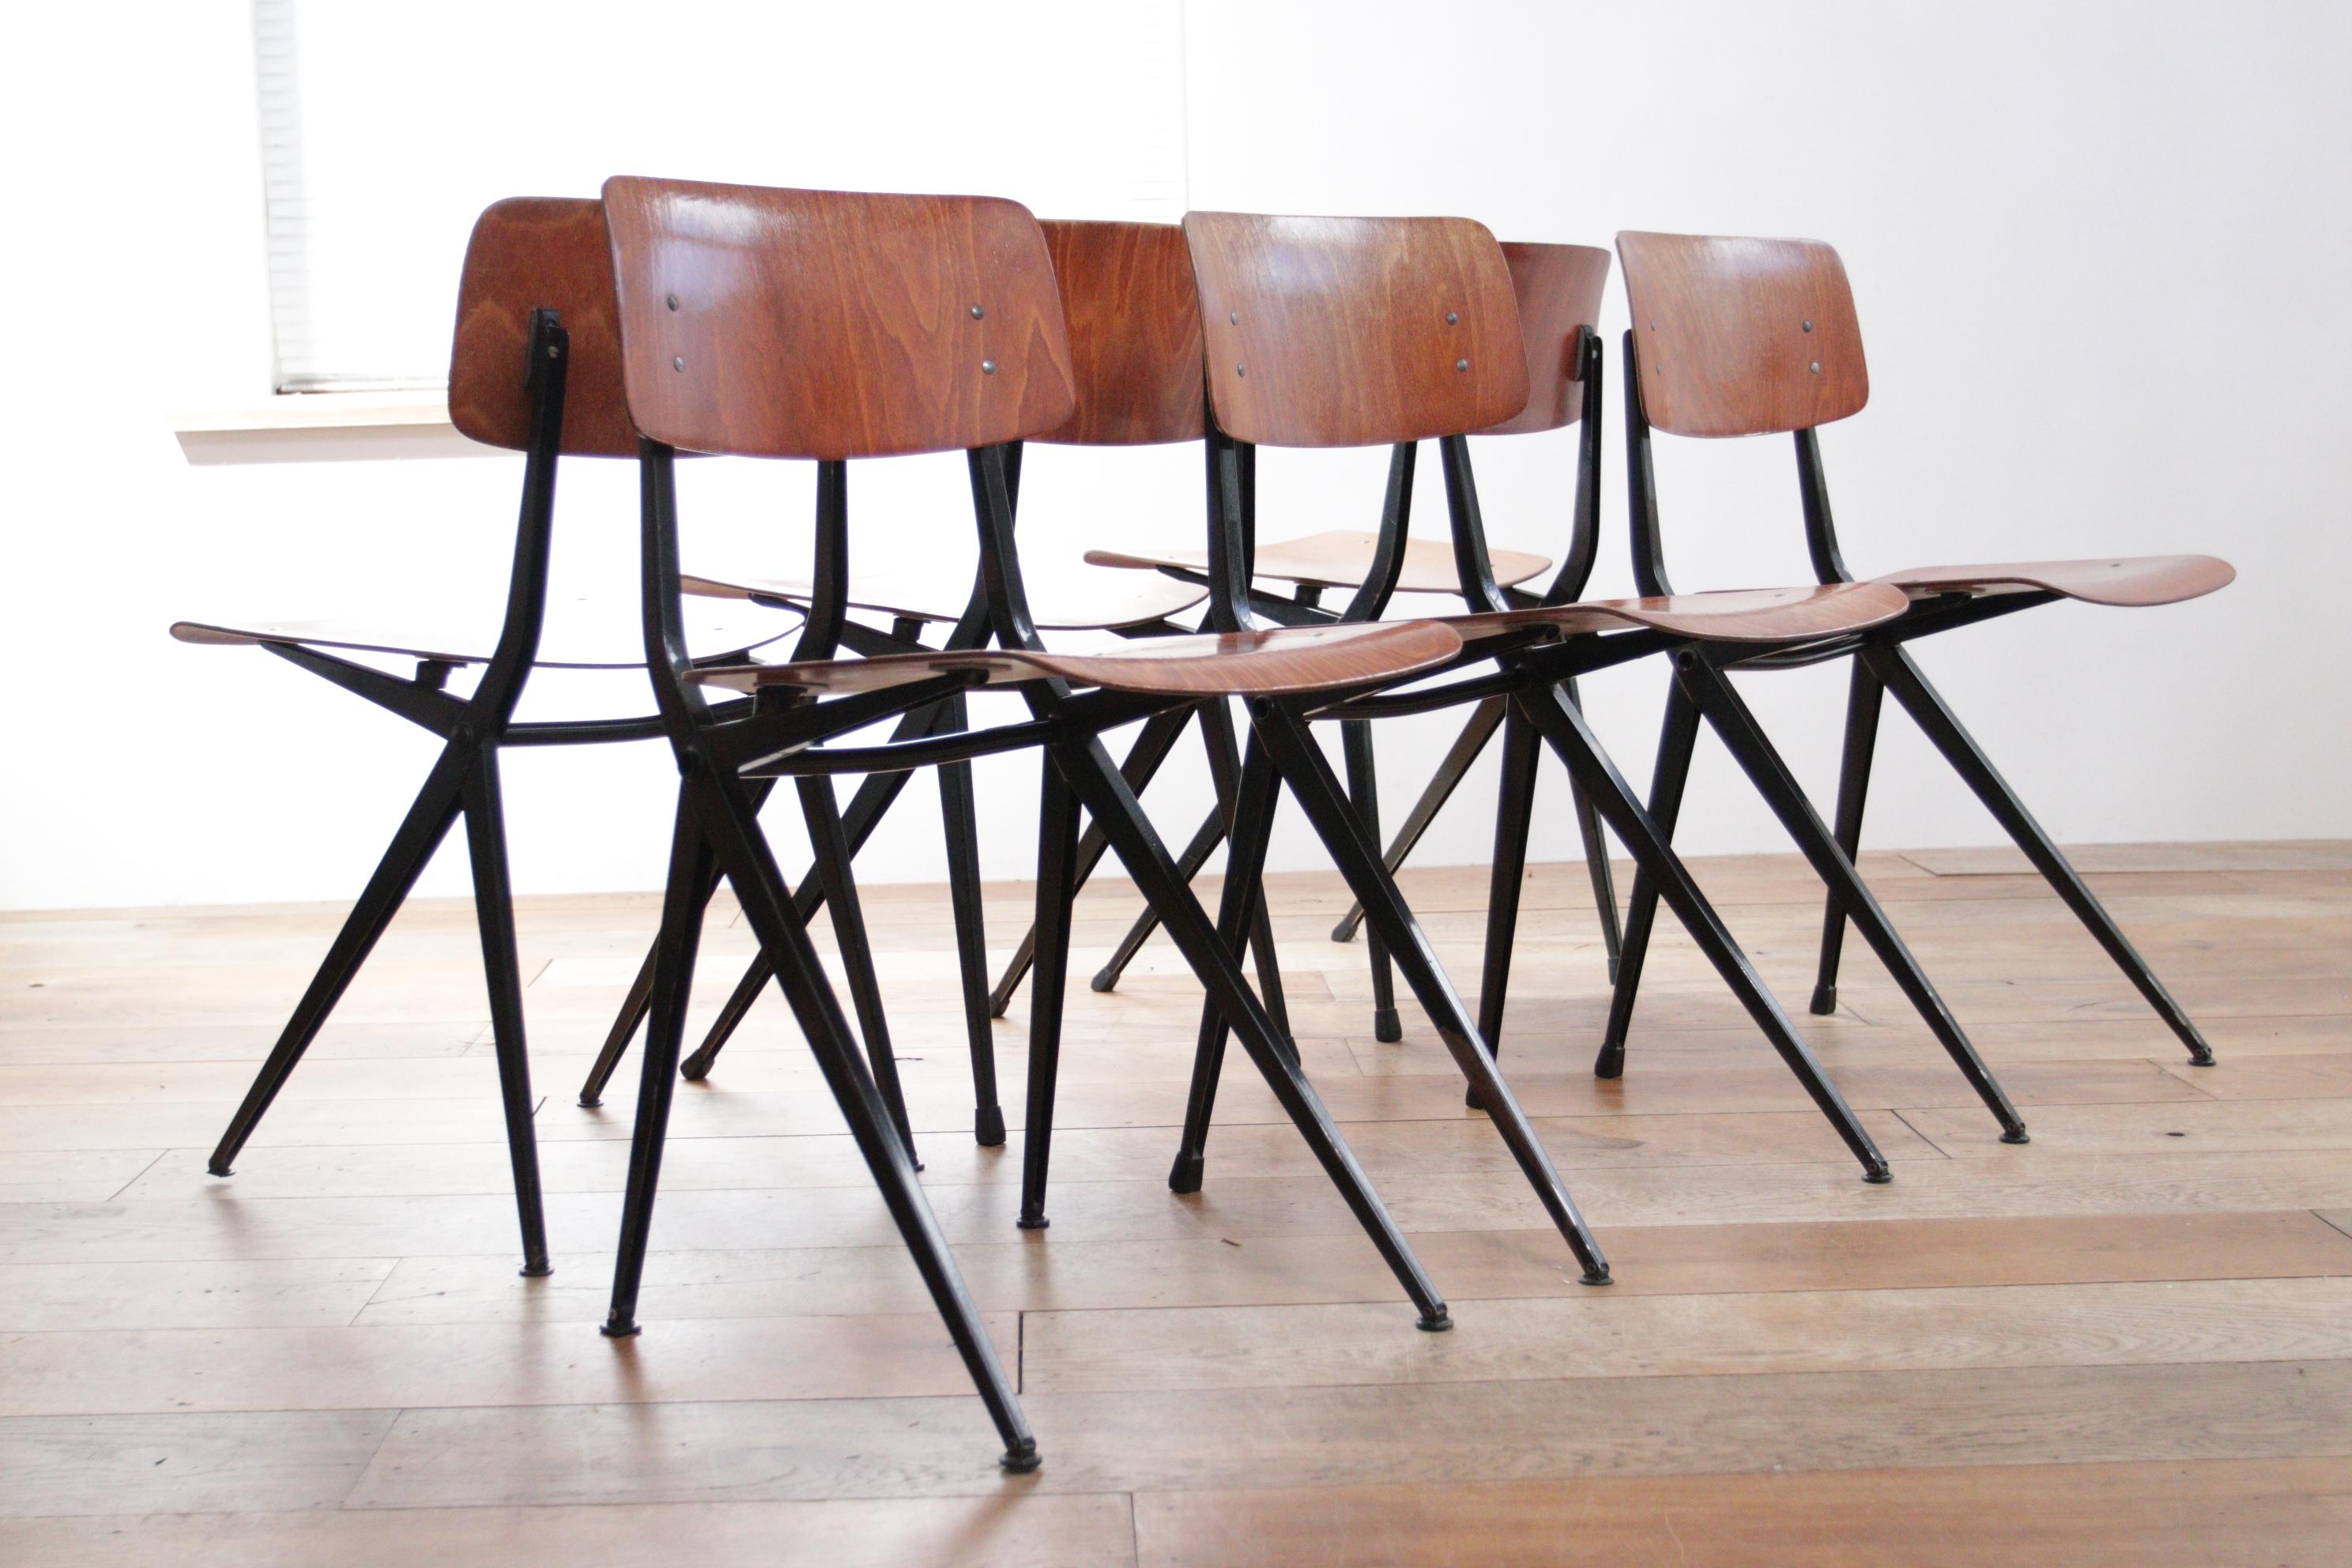 Marko S201 Ynske Kooistra Dining Room Chairs For Sale 2